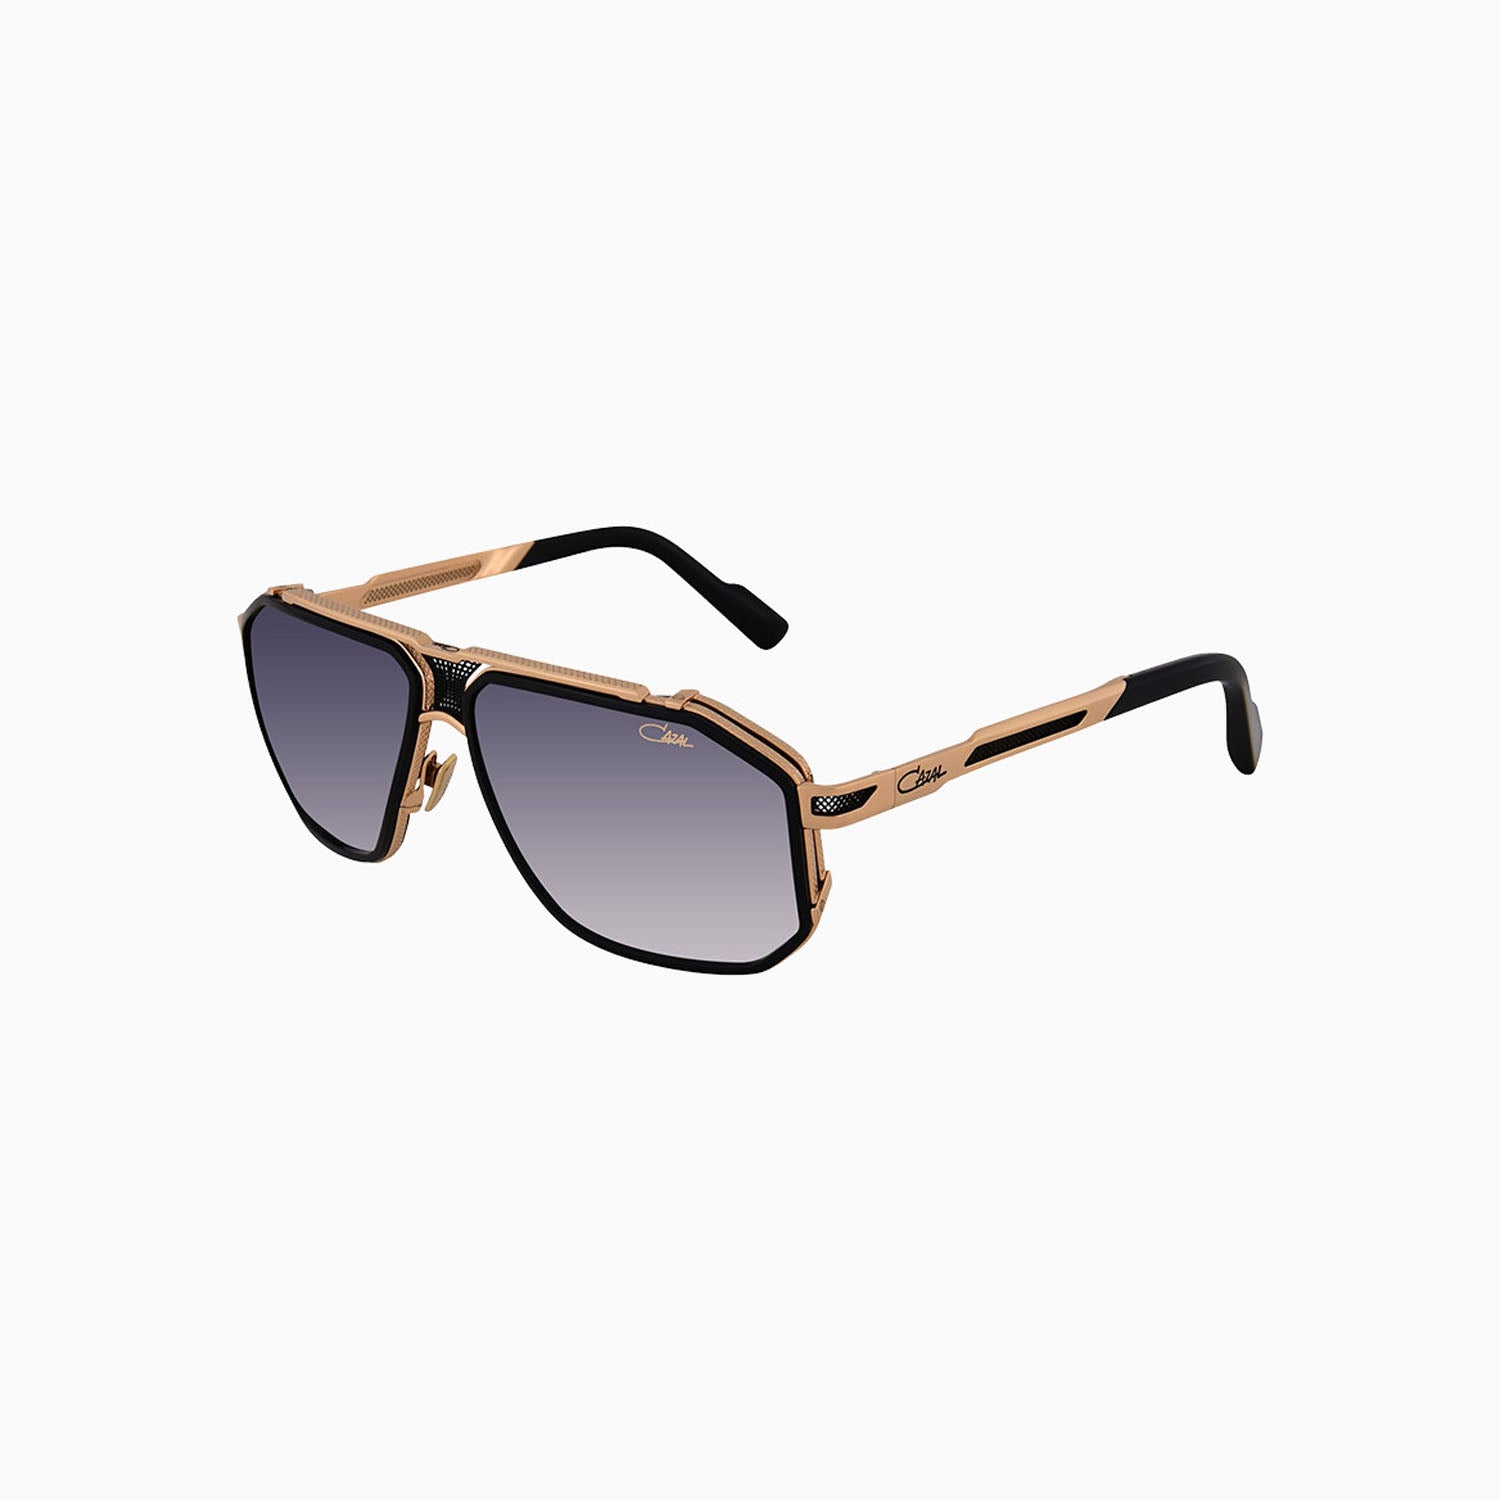 cazal-eyewear-mod-683-cazal-black-gold-sunglasses-cazal-683-001